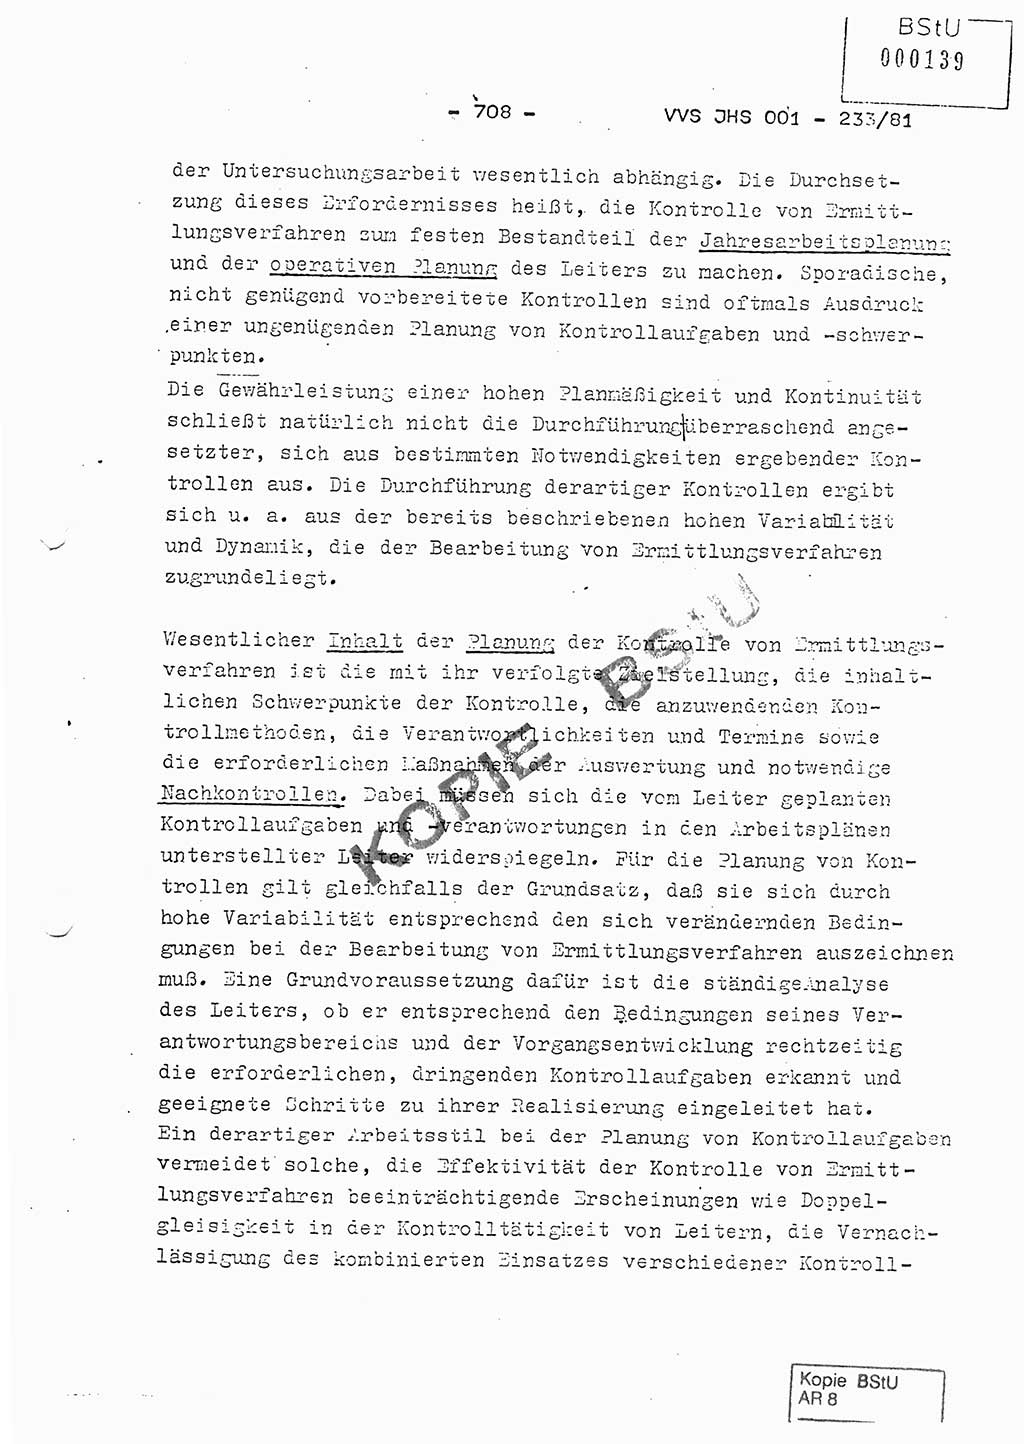 Dissertation Oberstleutnant Horst Zank (JHS), Oberstleutnant Dr. Karl-Heinz Knoblauch (JHS), Oberstleutnant Gustav-Adolf Kowalewski (HA Ⅸ), Oberstleutnant Wolfgang Plötner (HA Ⅸ), Ministerium für Staatssicherheit (MfS) [Deutsche Demokratische Republik (DDR)], Juristische Hochschule (JHS), Vertrauliche Verschlußsache (VVS) o001-233/81, Potsdam 1981, Blatt 708 (Diss. MfS DDR JHS VVS o001-233/81 1981, Bl. 708)